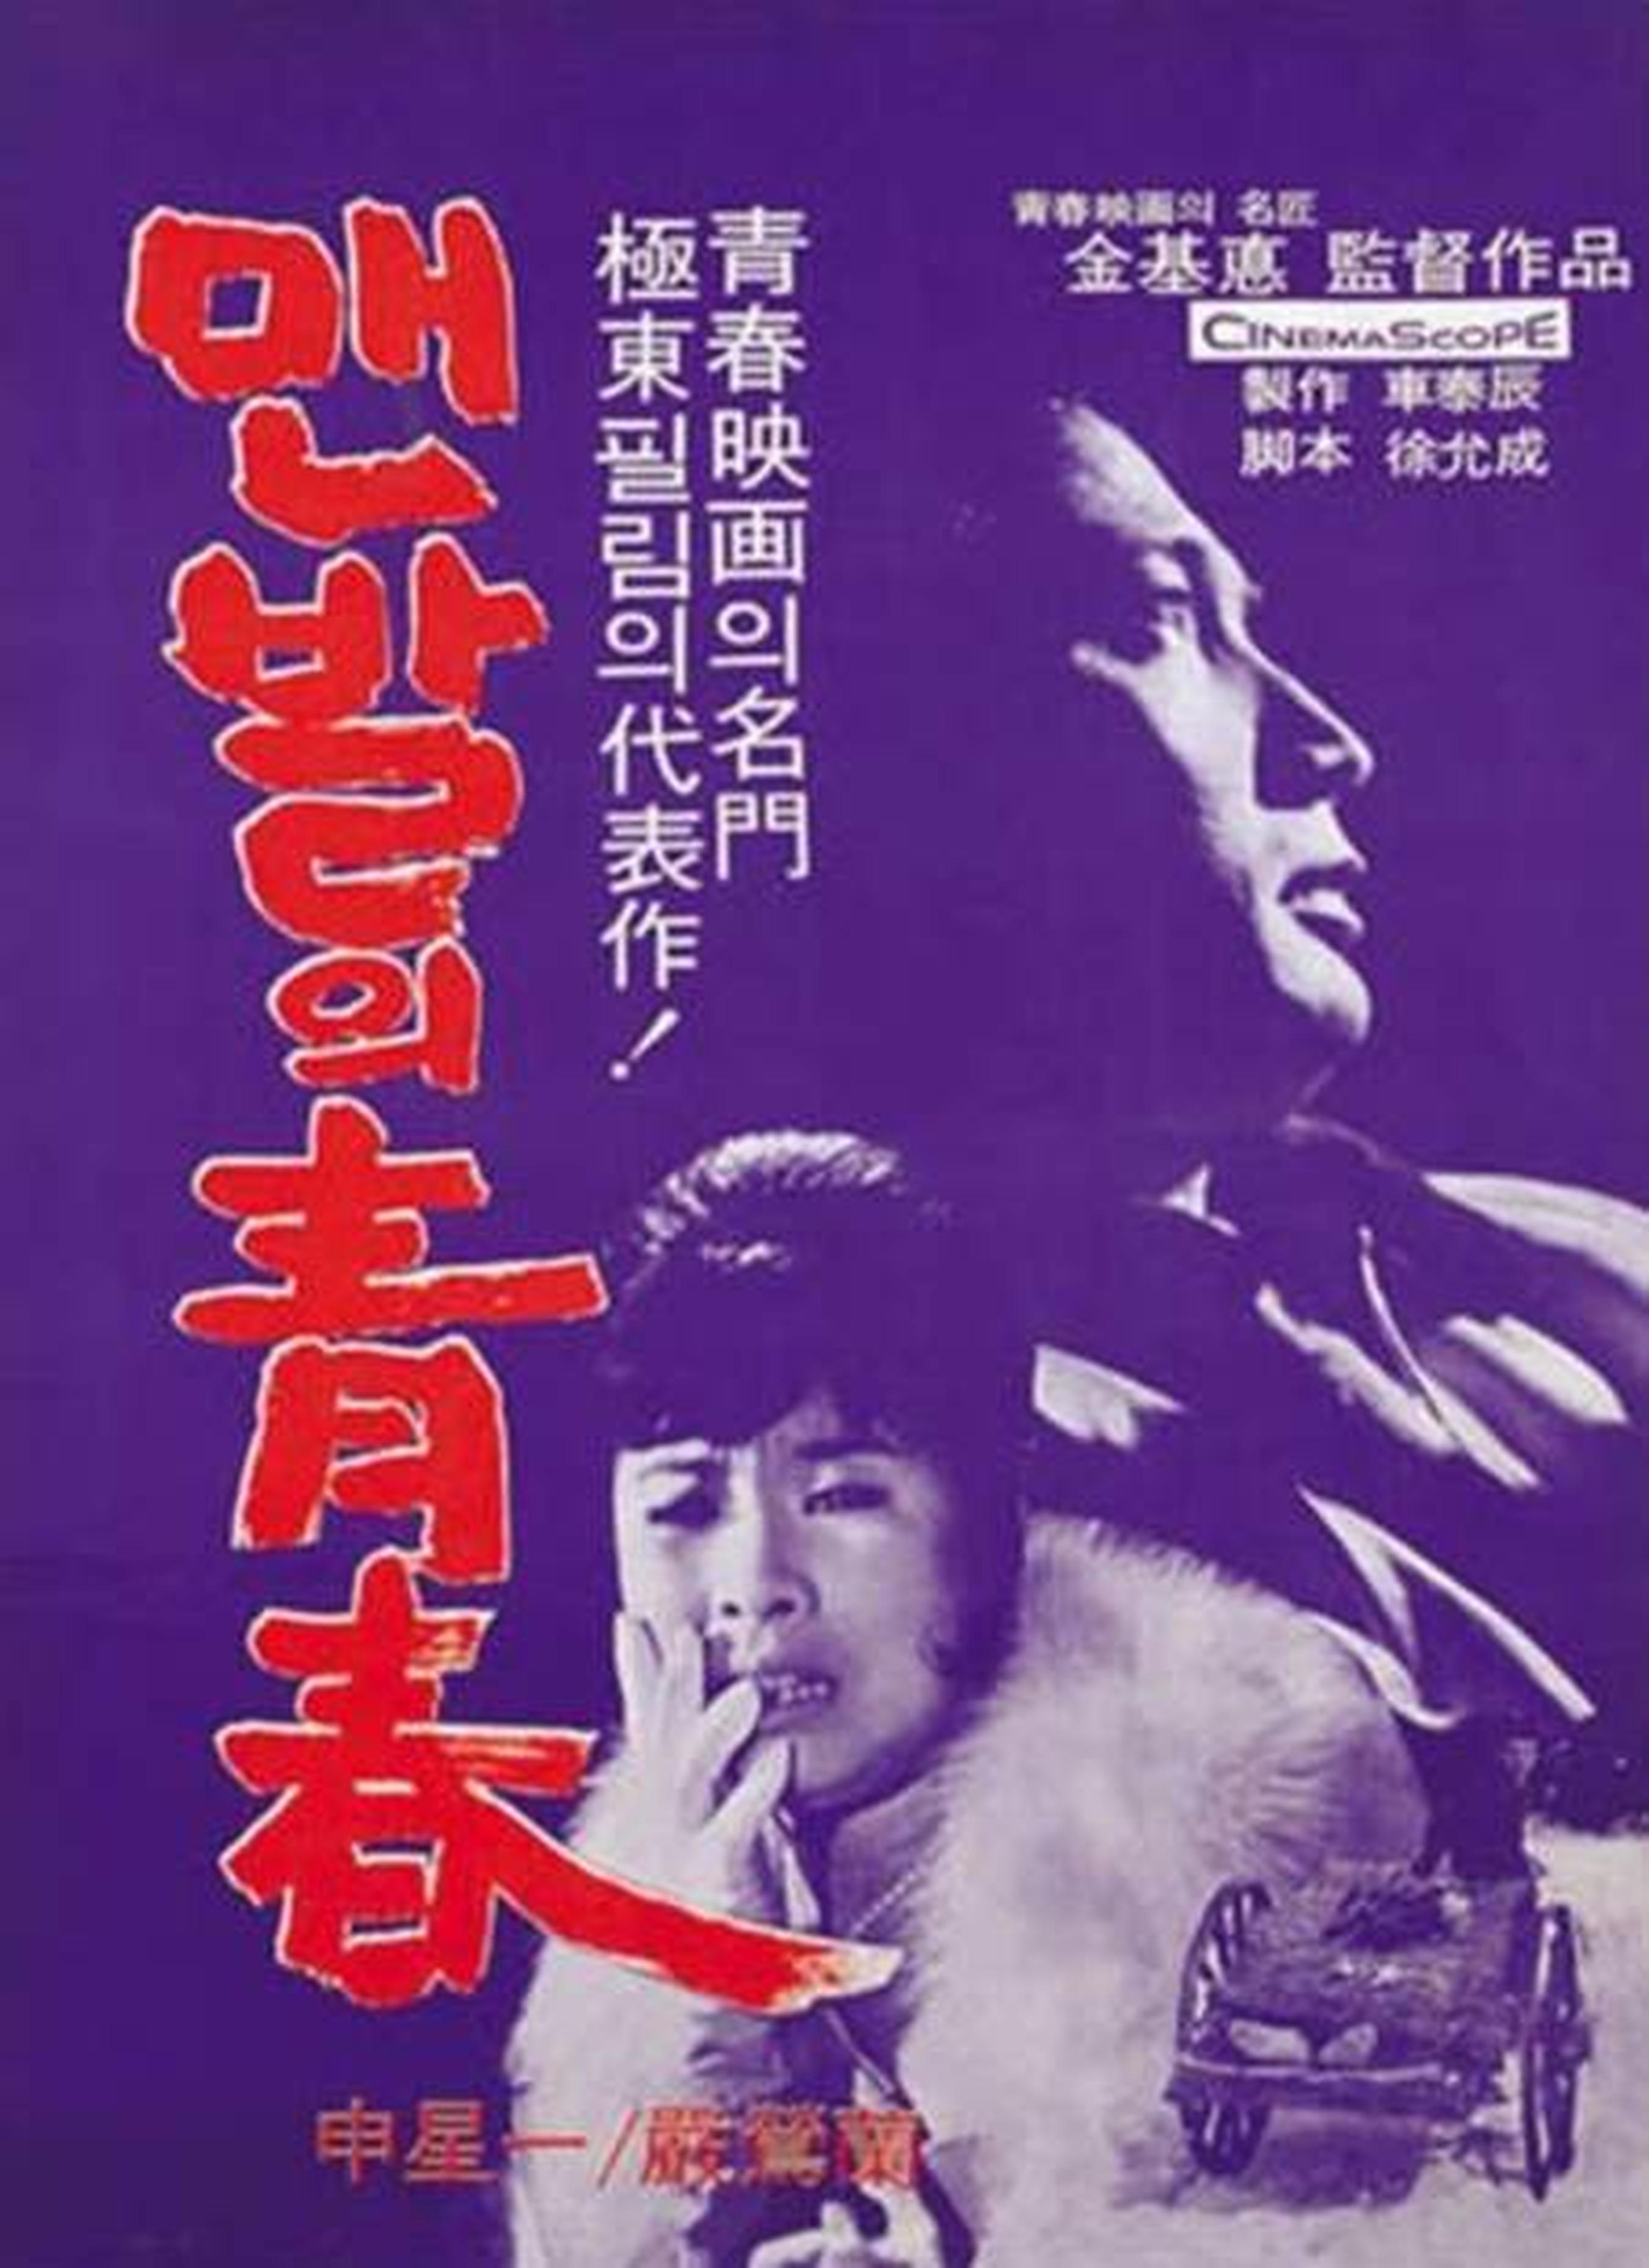 【1960-1970】《赤脚青春》 (1964)导演金基悳